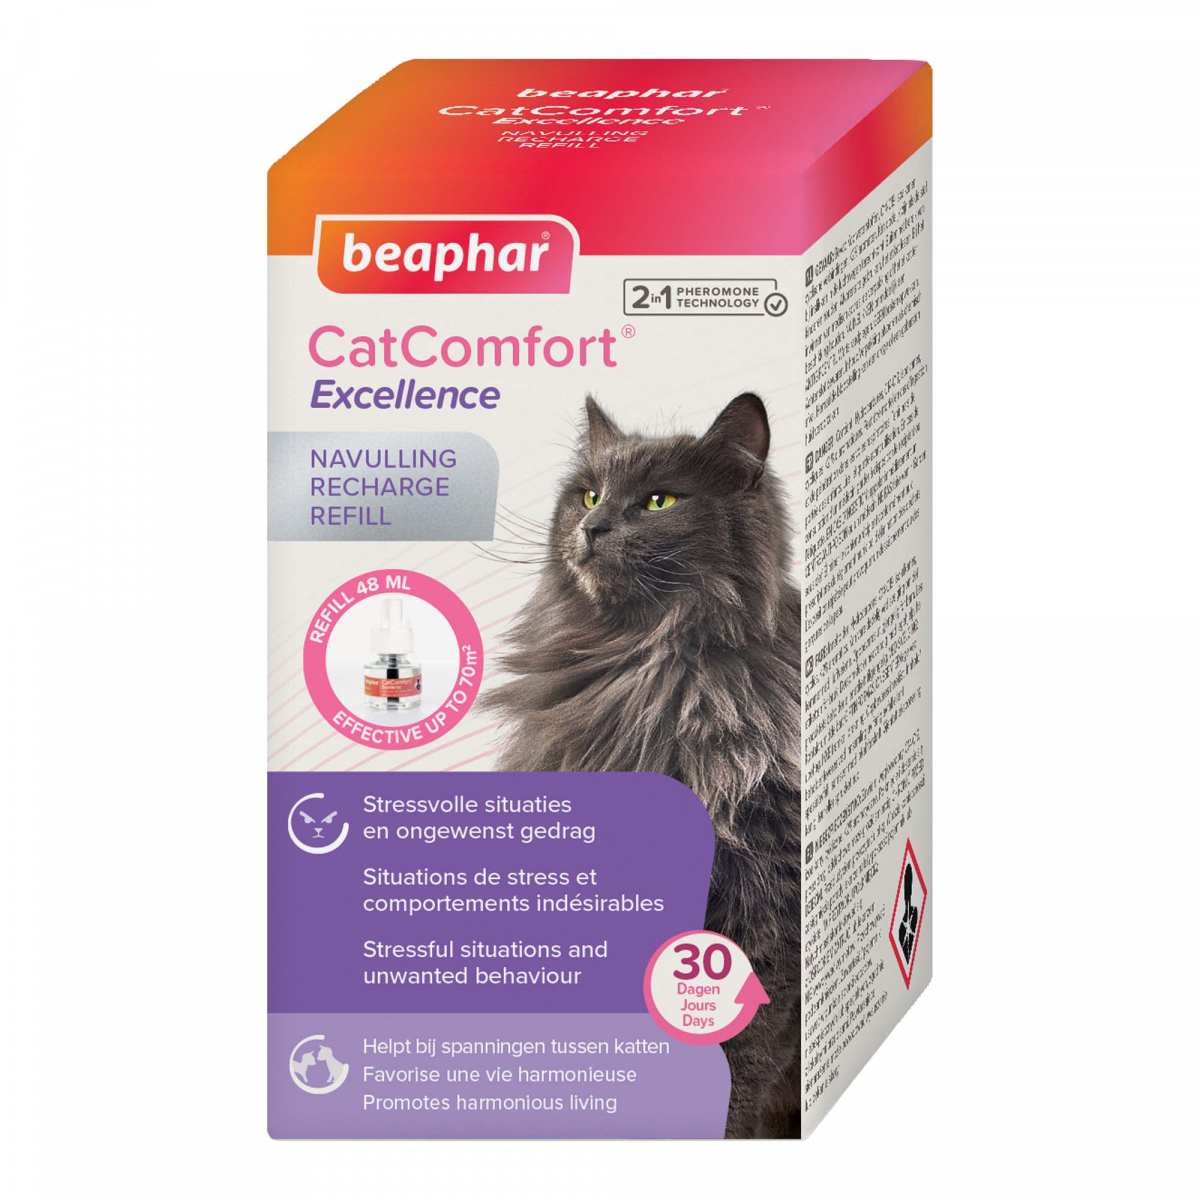 ÔCALM Solution calmante pour les chats - Phéromones (Spray 29 ml